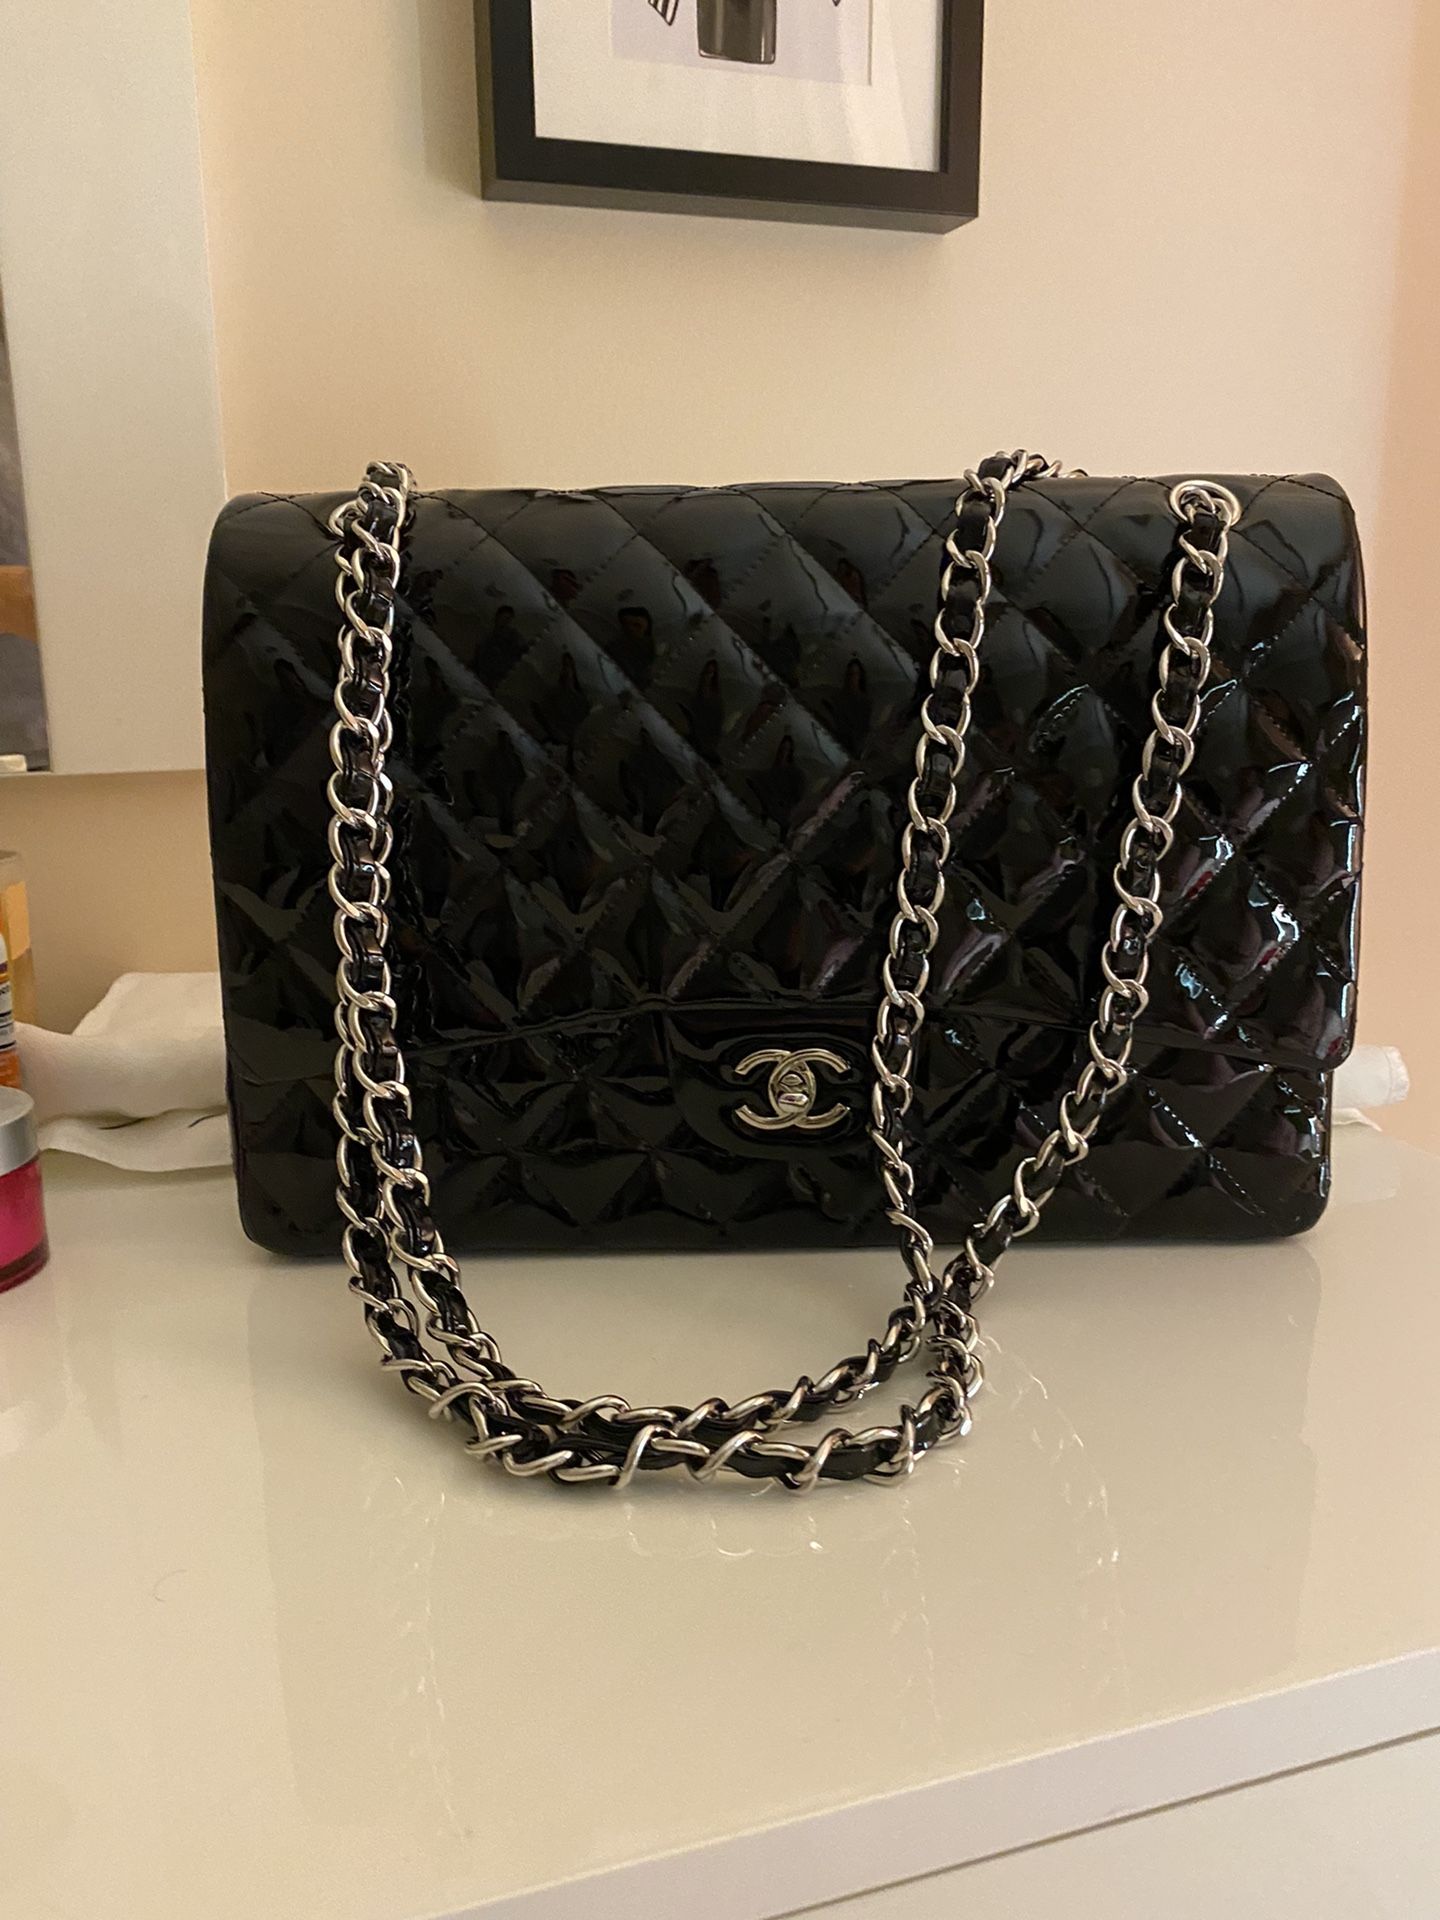 Black Chanel bag (Large)